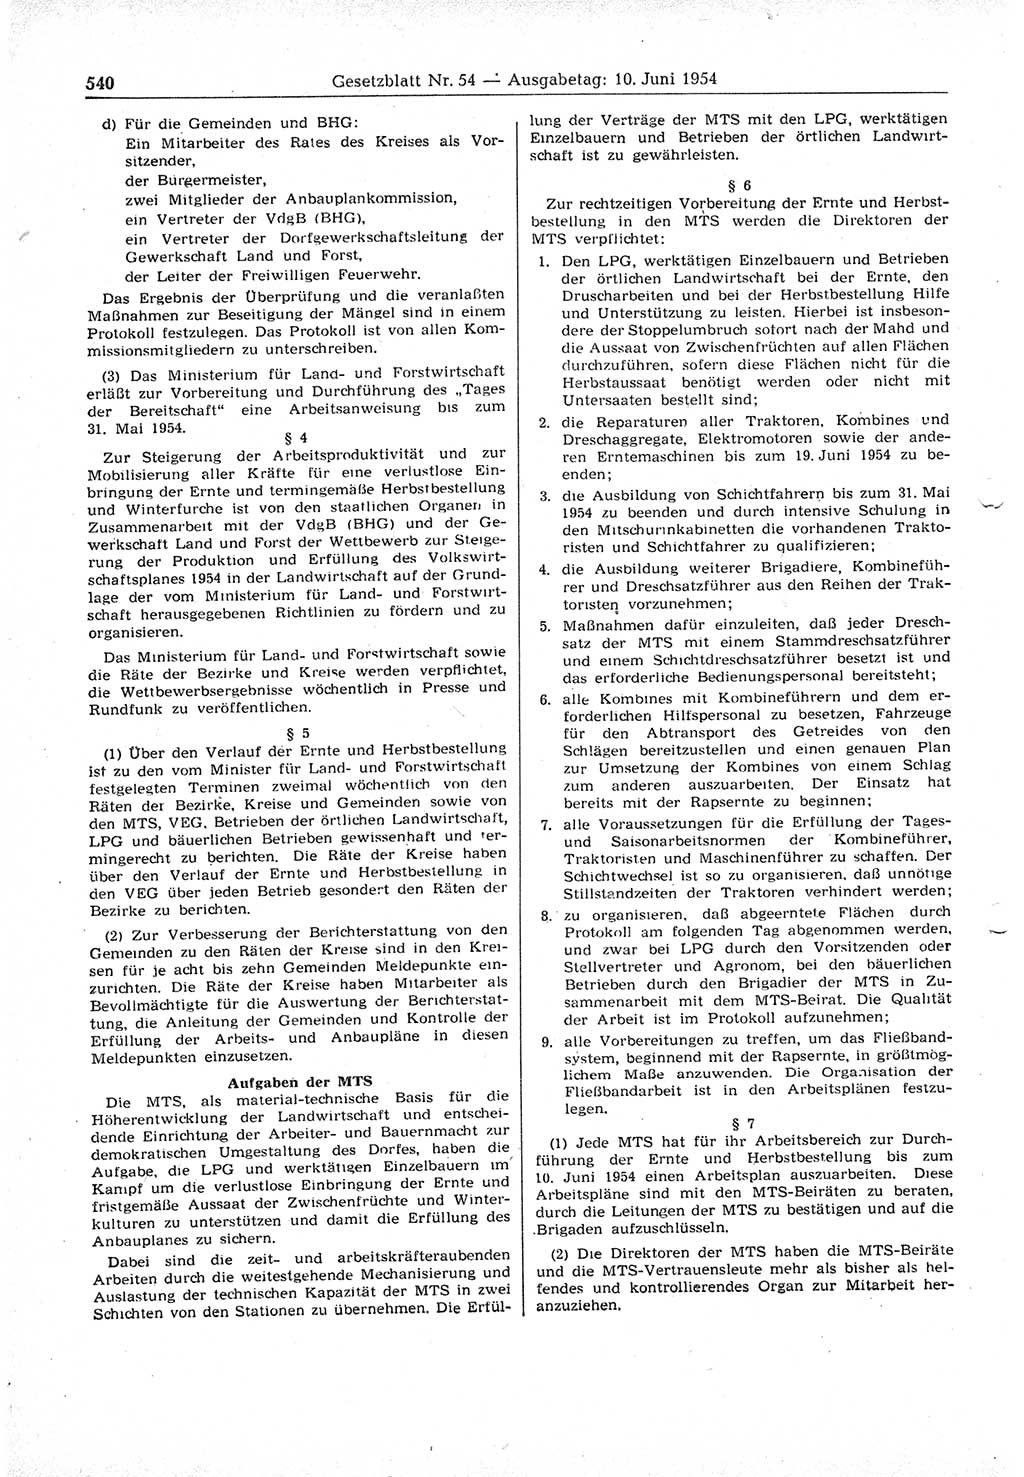 Gesetzblatt (GBl.) der Deutschen Demokratischen Republik (DDR) 1954, Seite 540 (GBl. DDR 1954, S. 540)